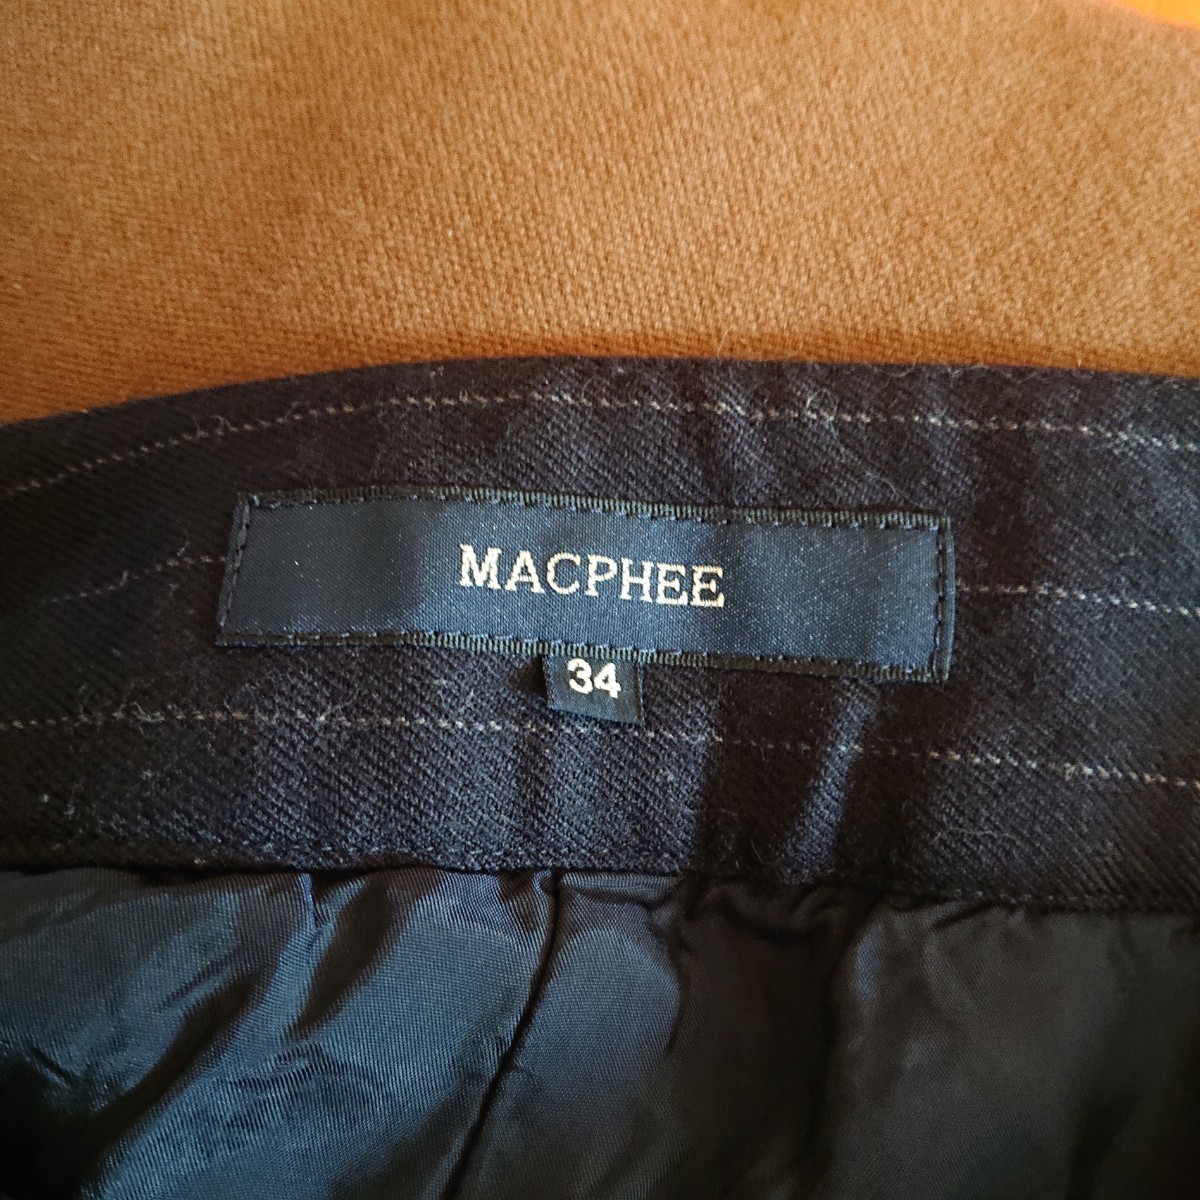 【MACPHEE】マカフィー ピンストライプショートパンツ サイズ34